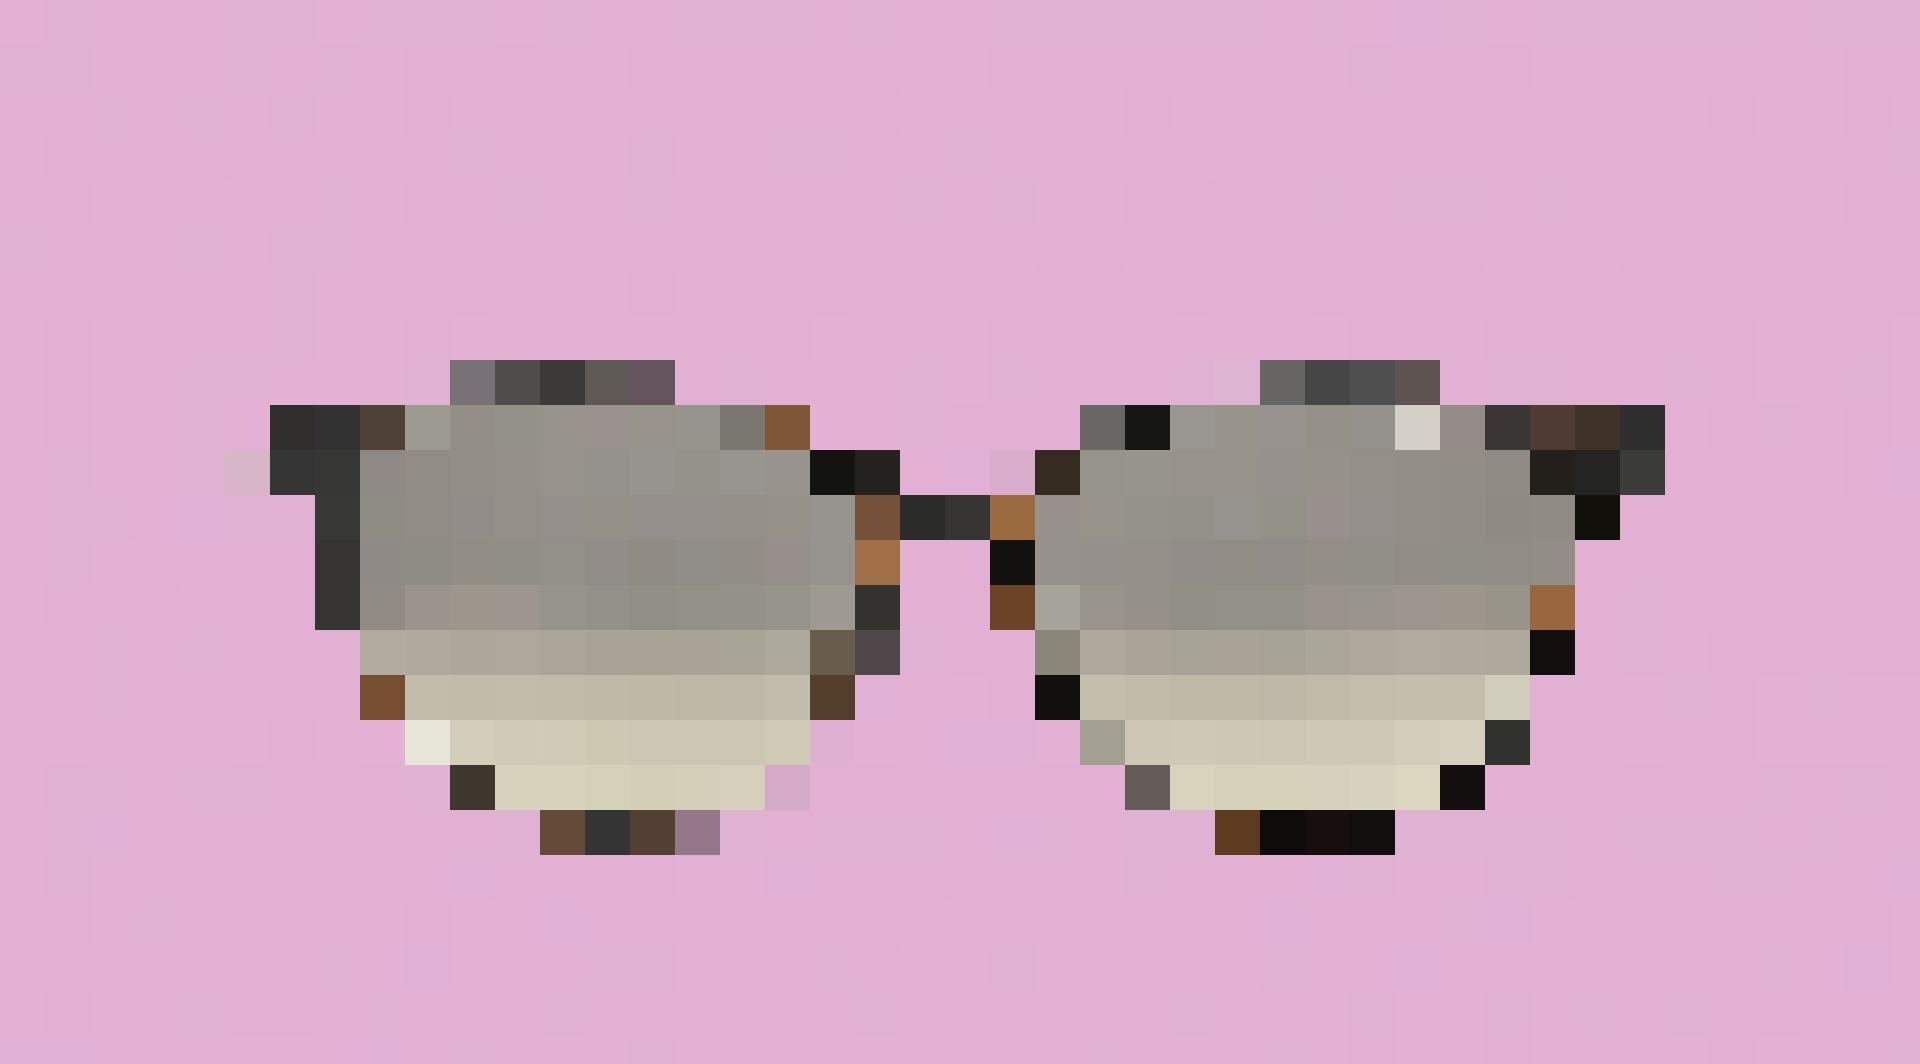 Sonnenbrille von Polaroid, Franken 59.90, bei